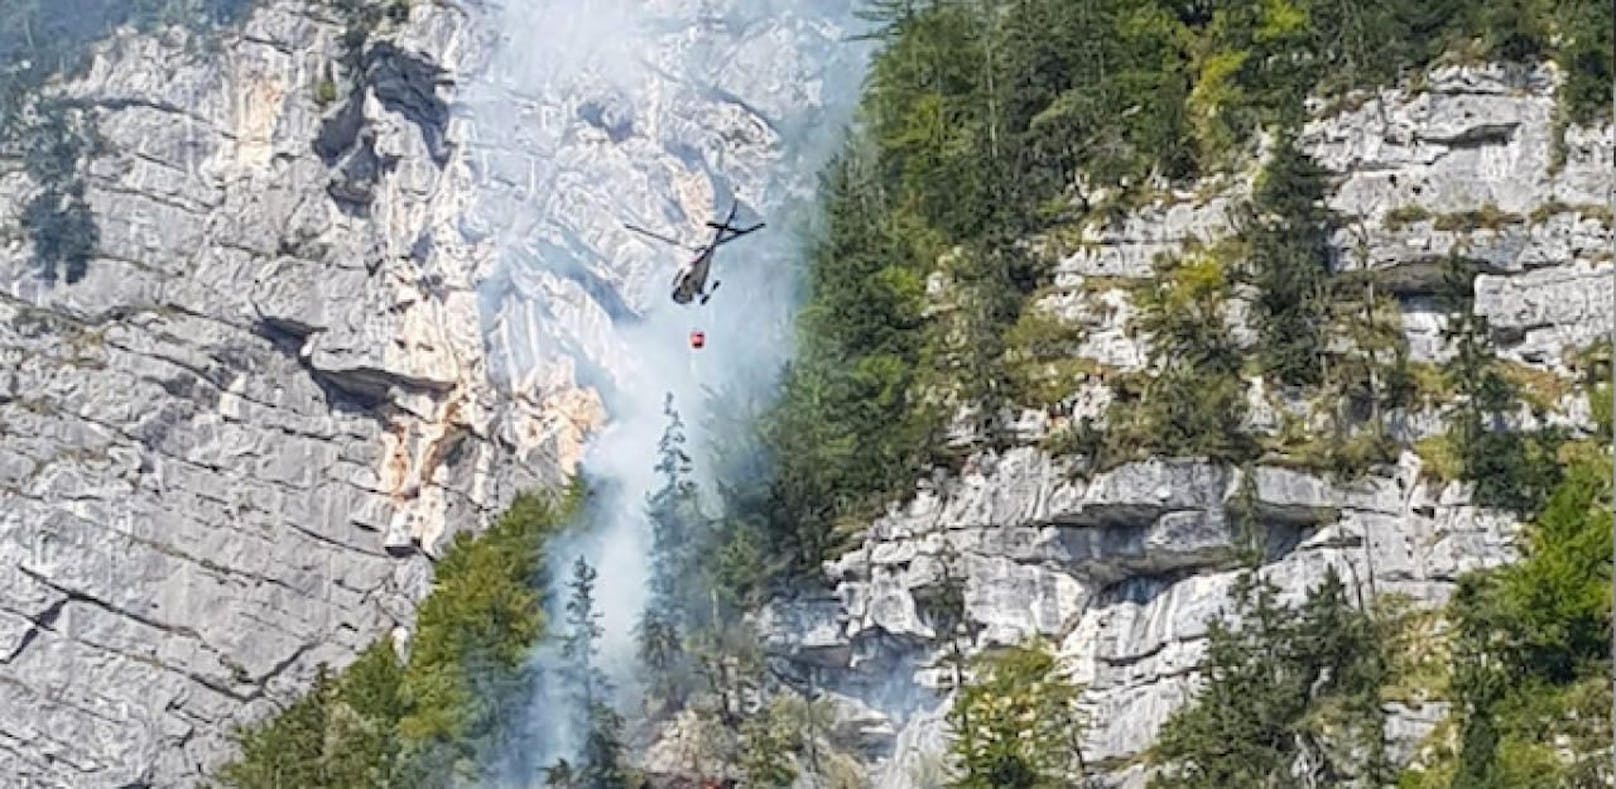 Brand in Klettersteig hält vier Feuerwehren in Atem